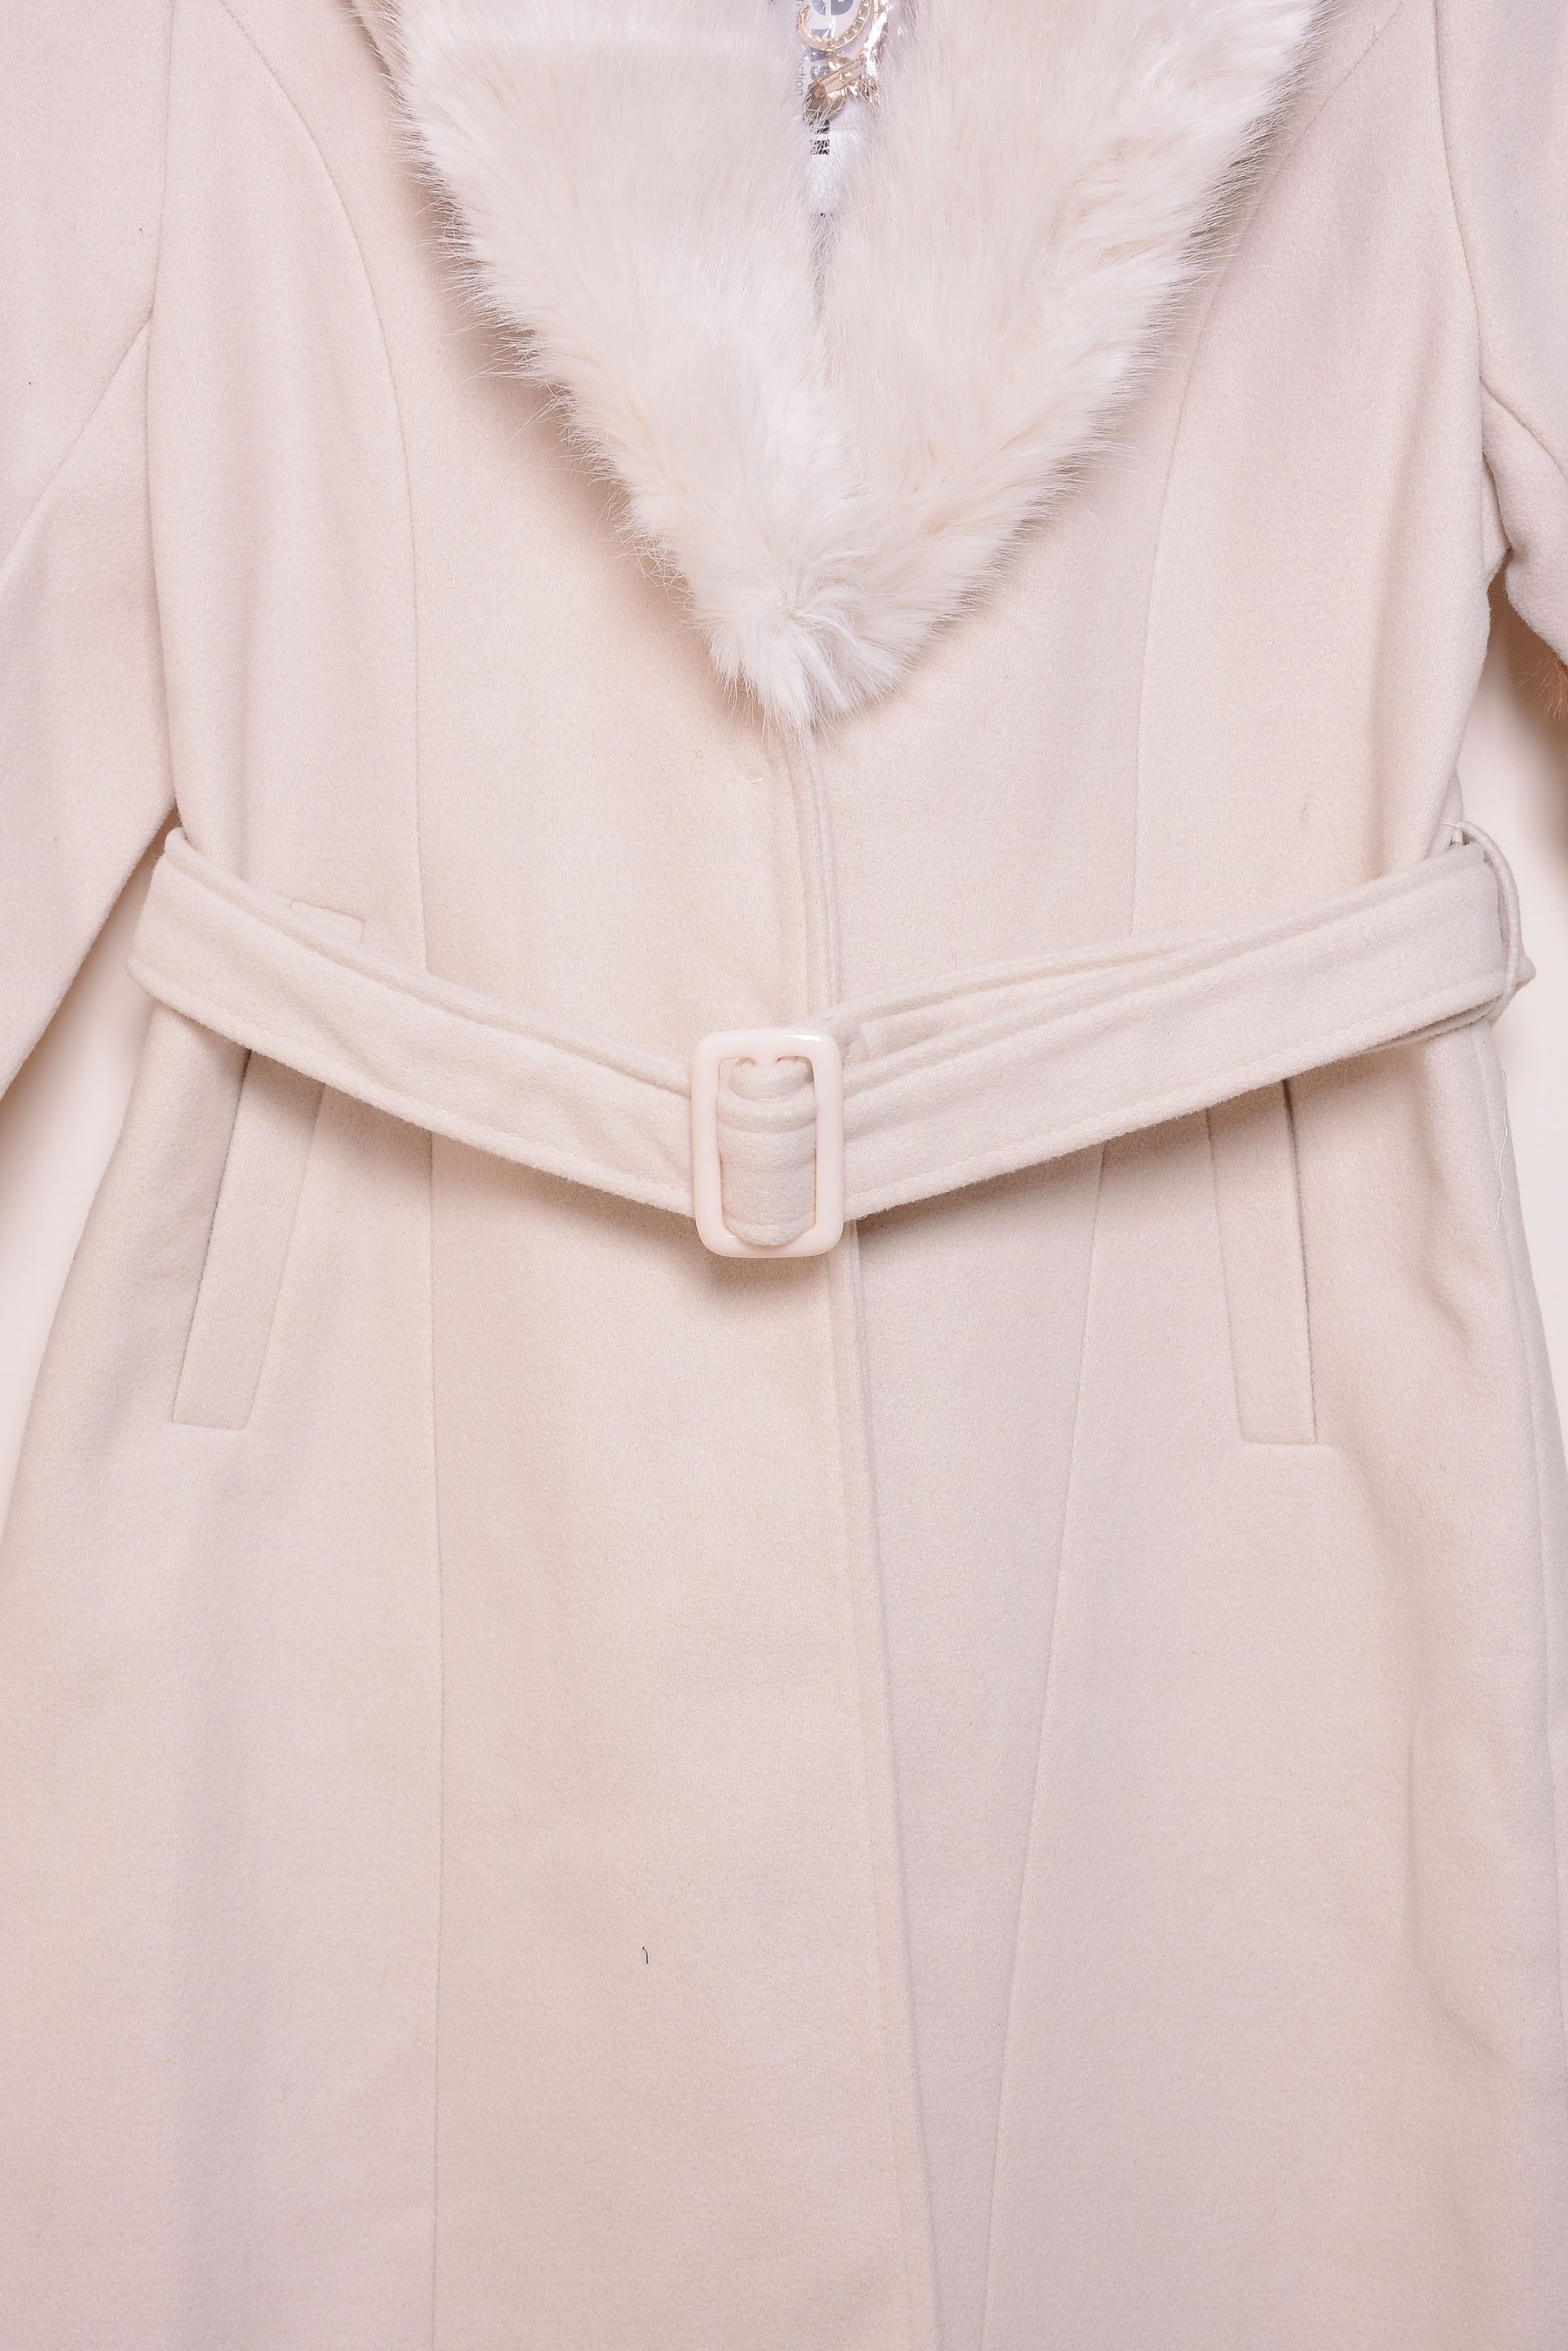 Ladies Winter Long Coats ykn-583 cream XL